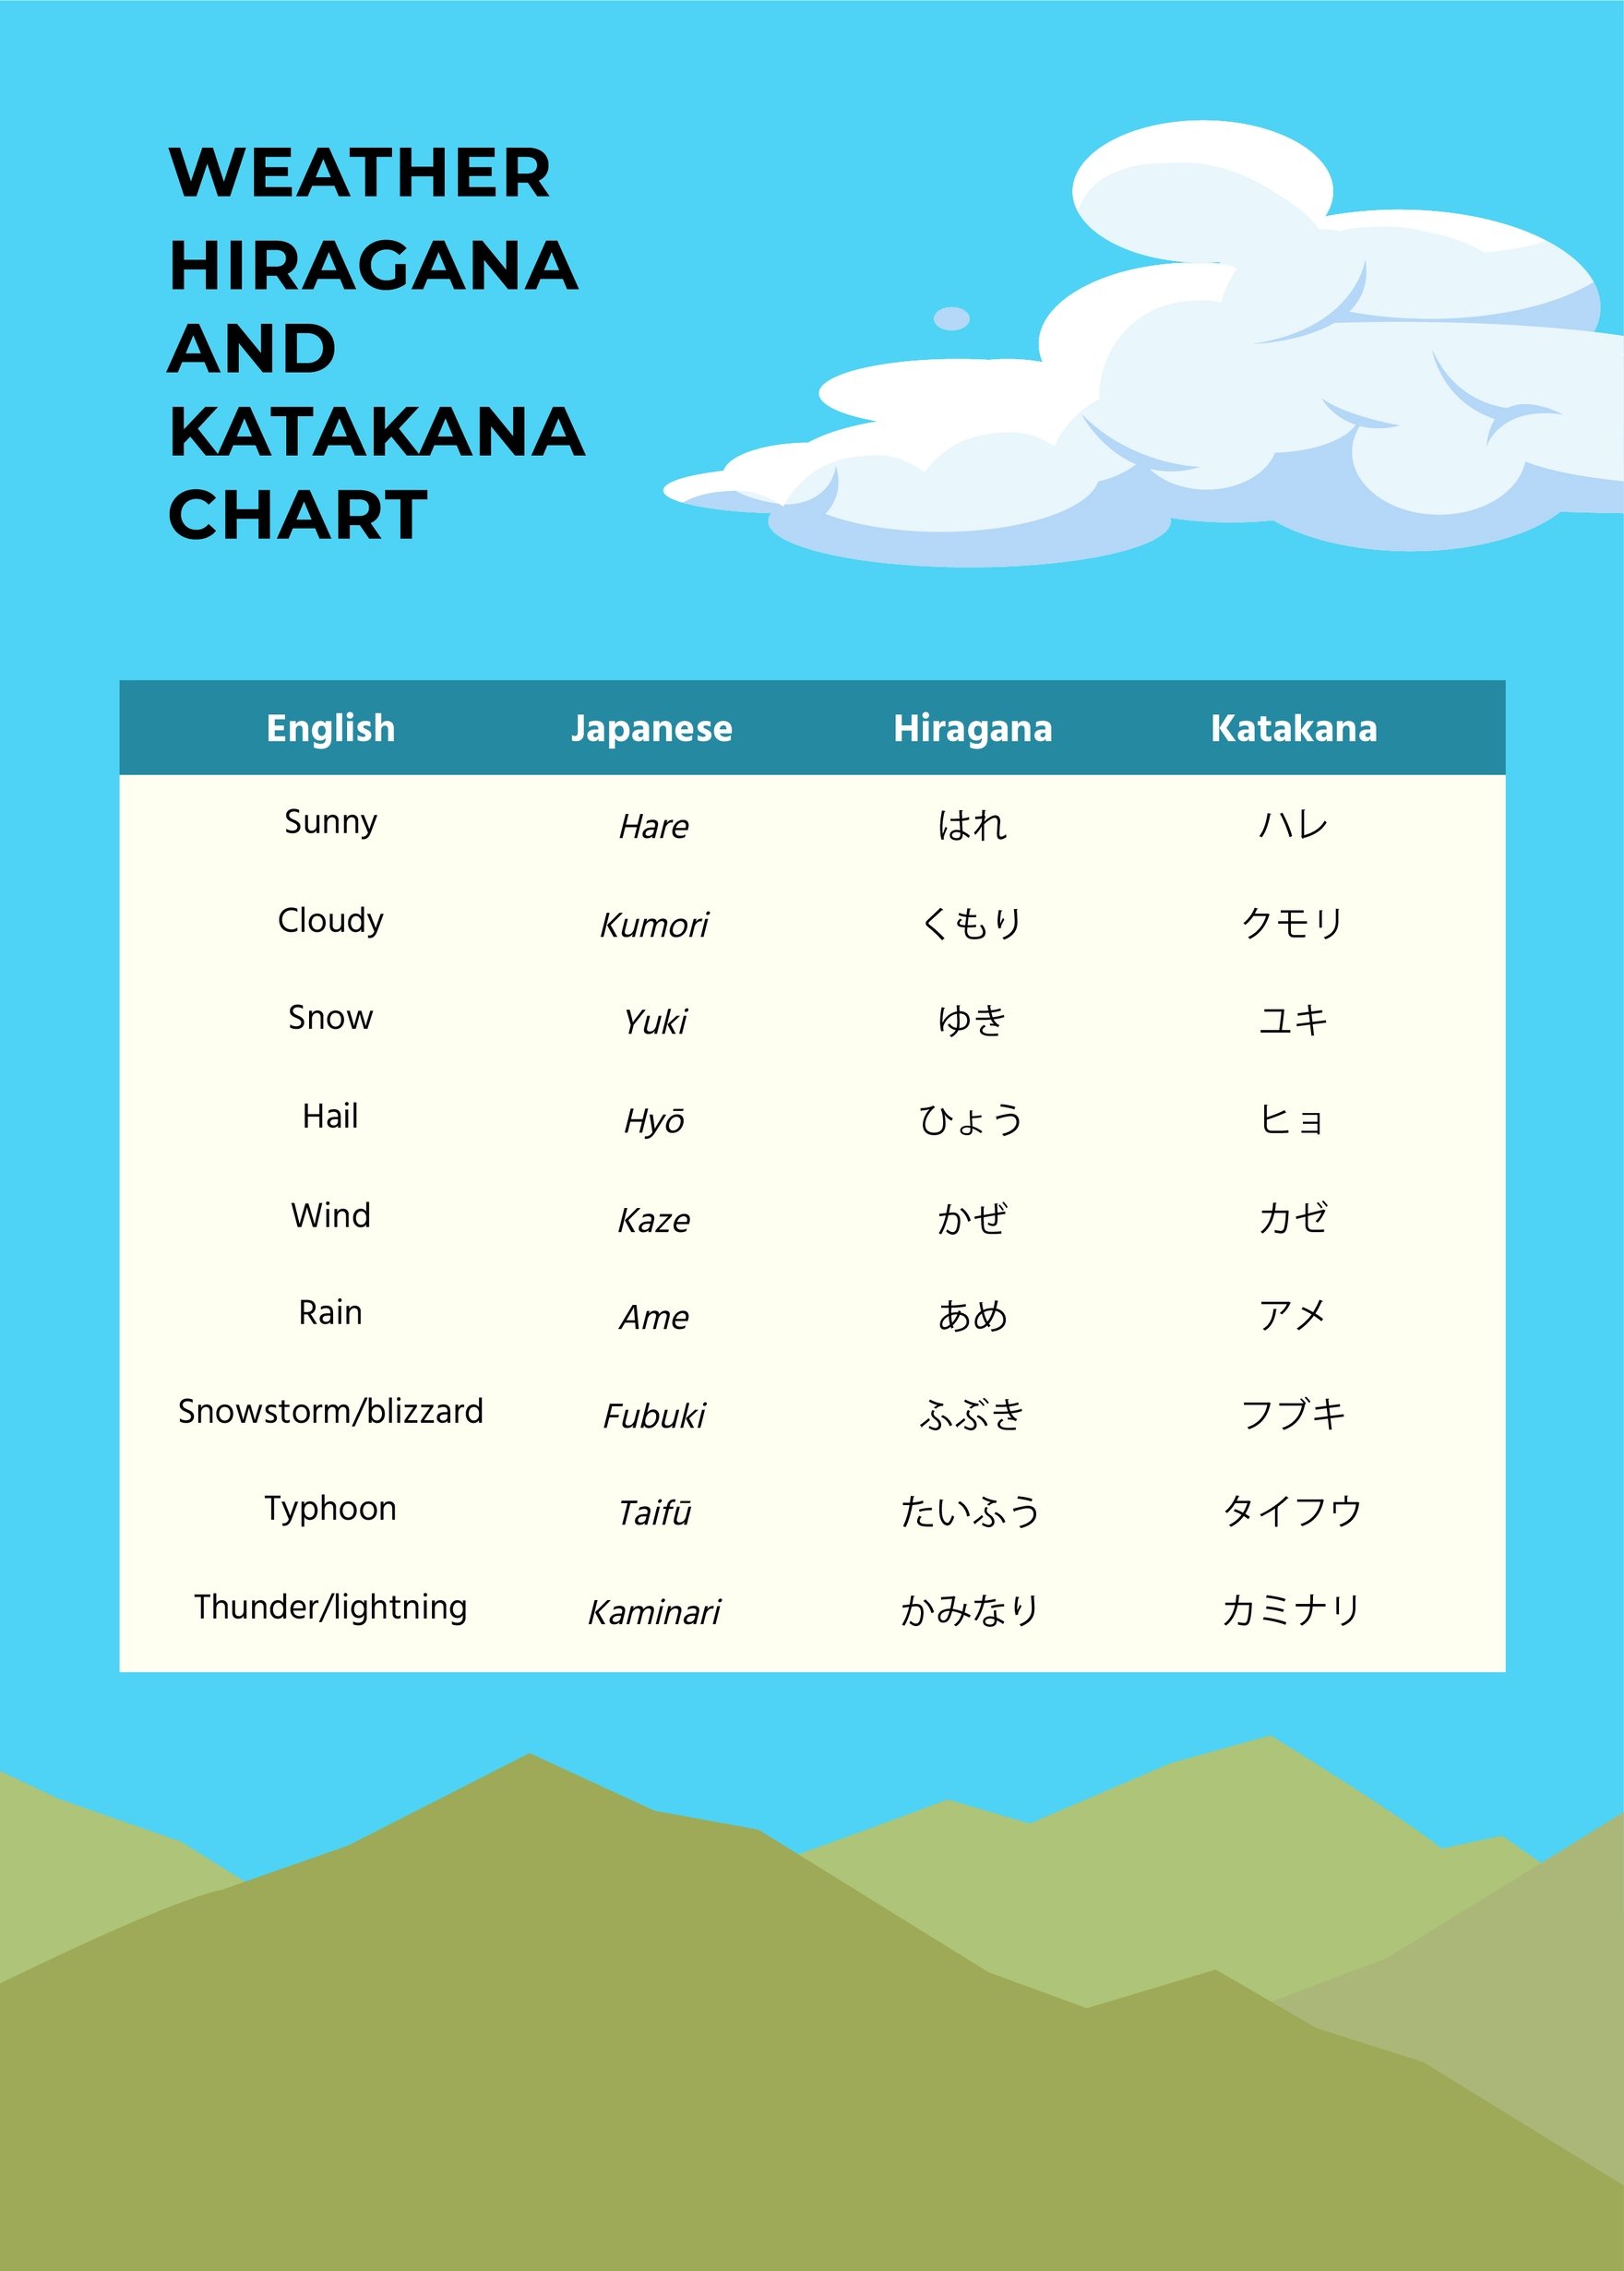 Free Weather Hiragana And Katakana Chart in PDF, Illustrator